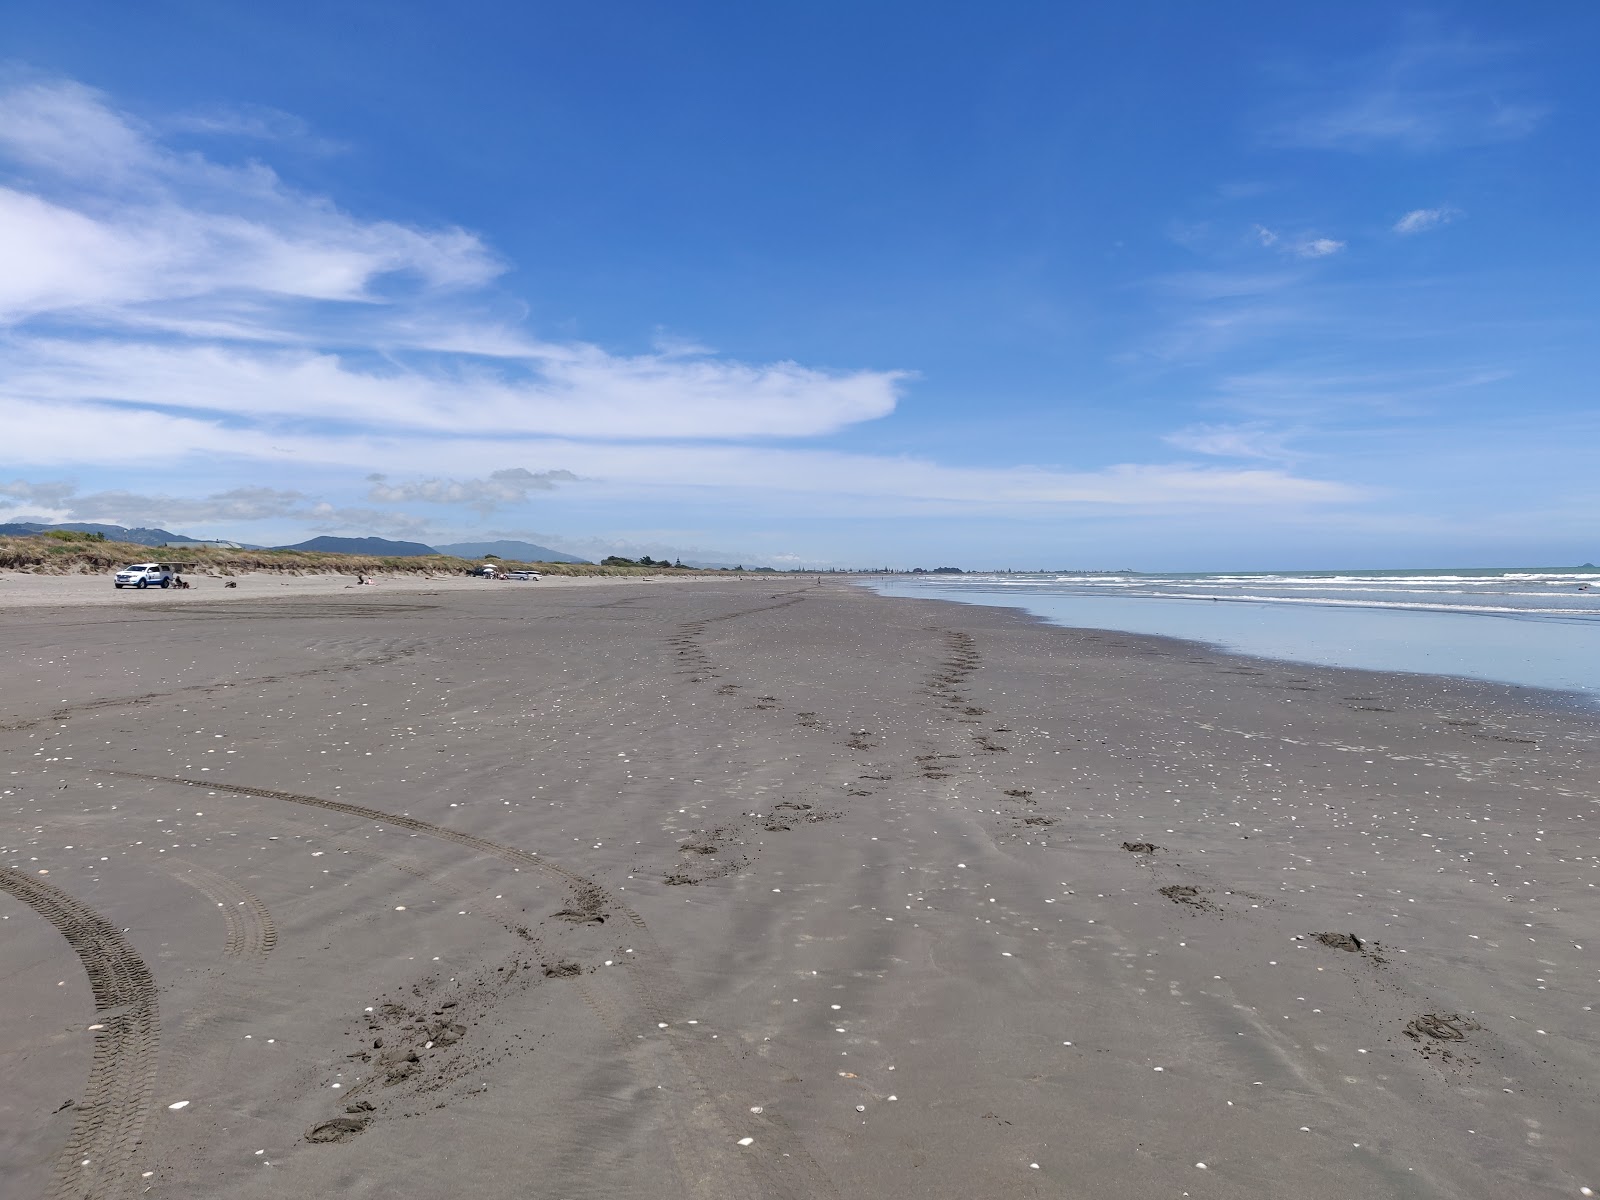 Zdjęcie Peka Peka Beach z powierzchnią szary piasek